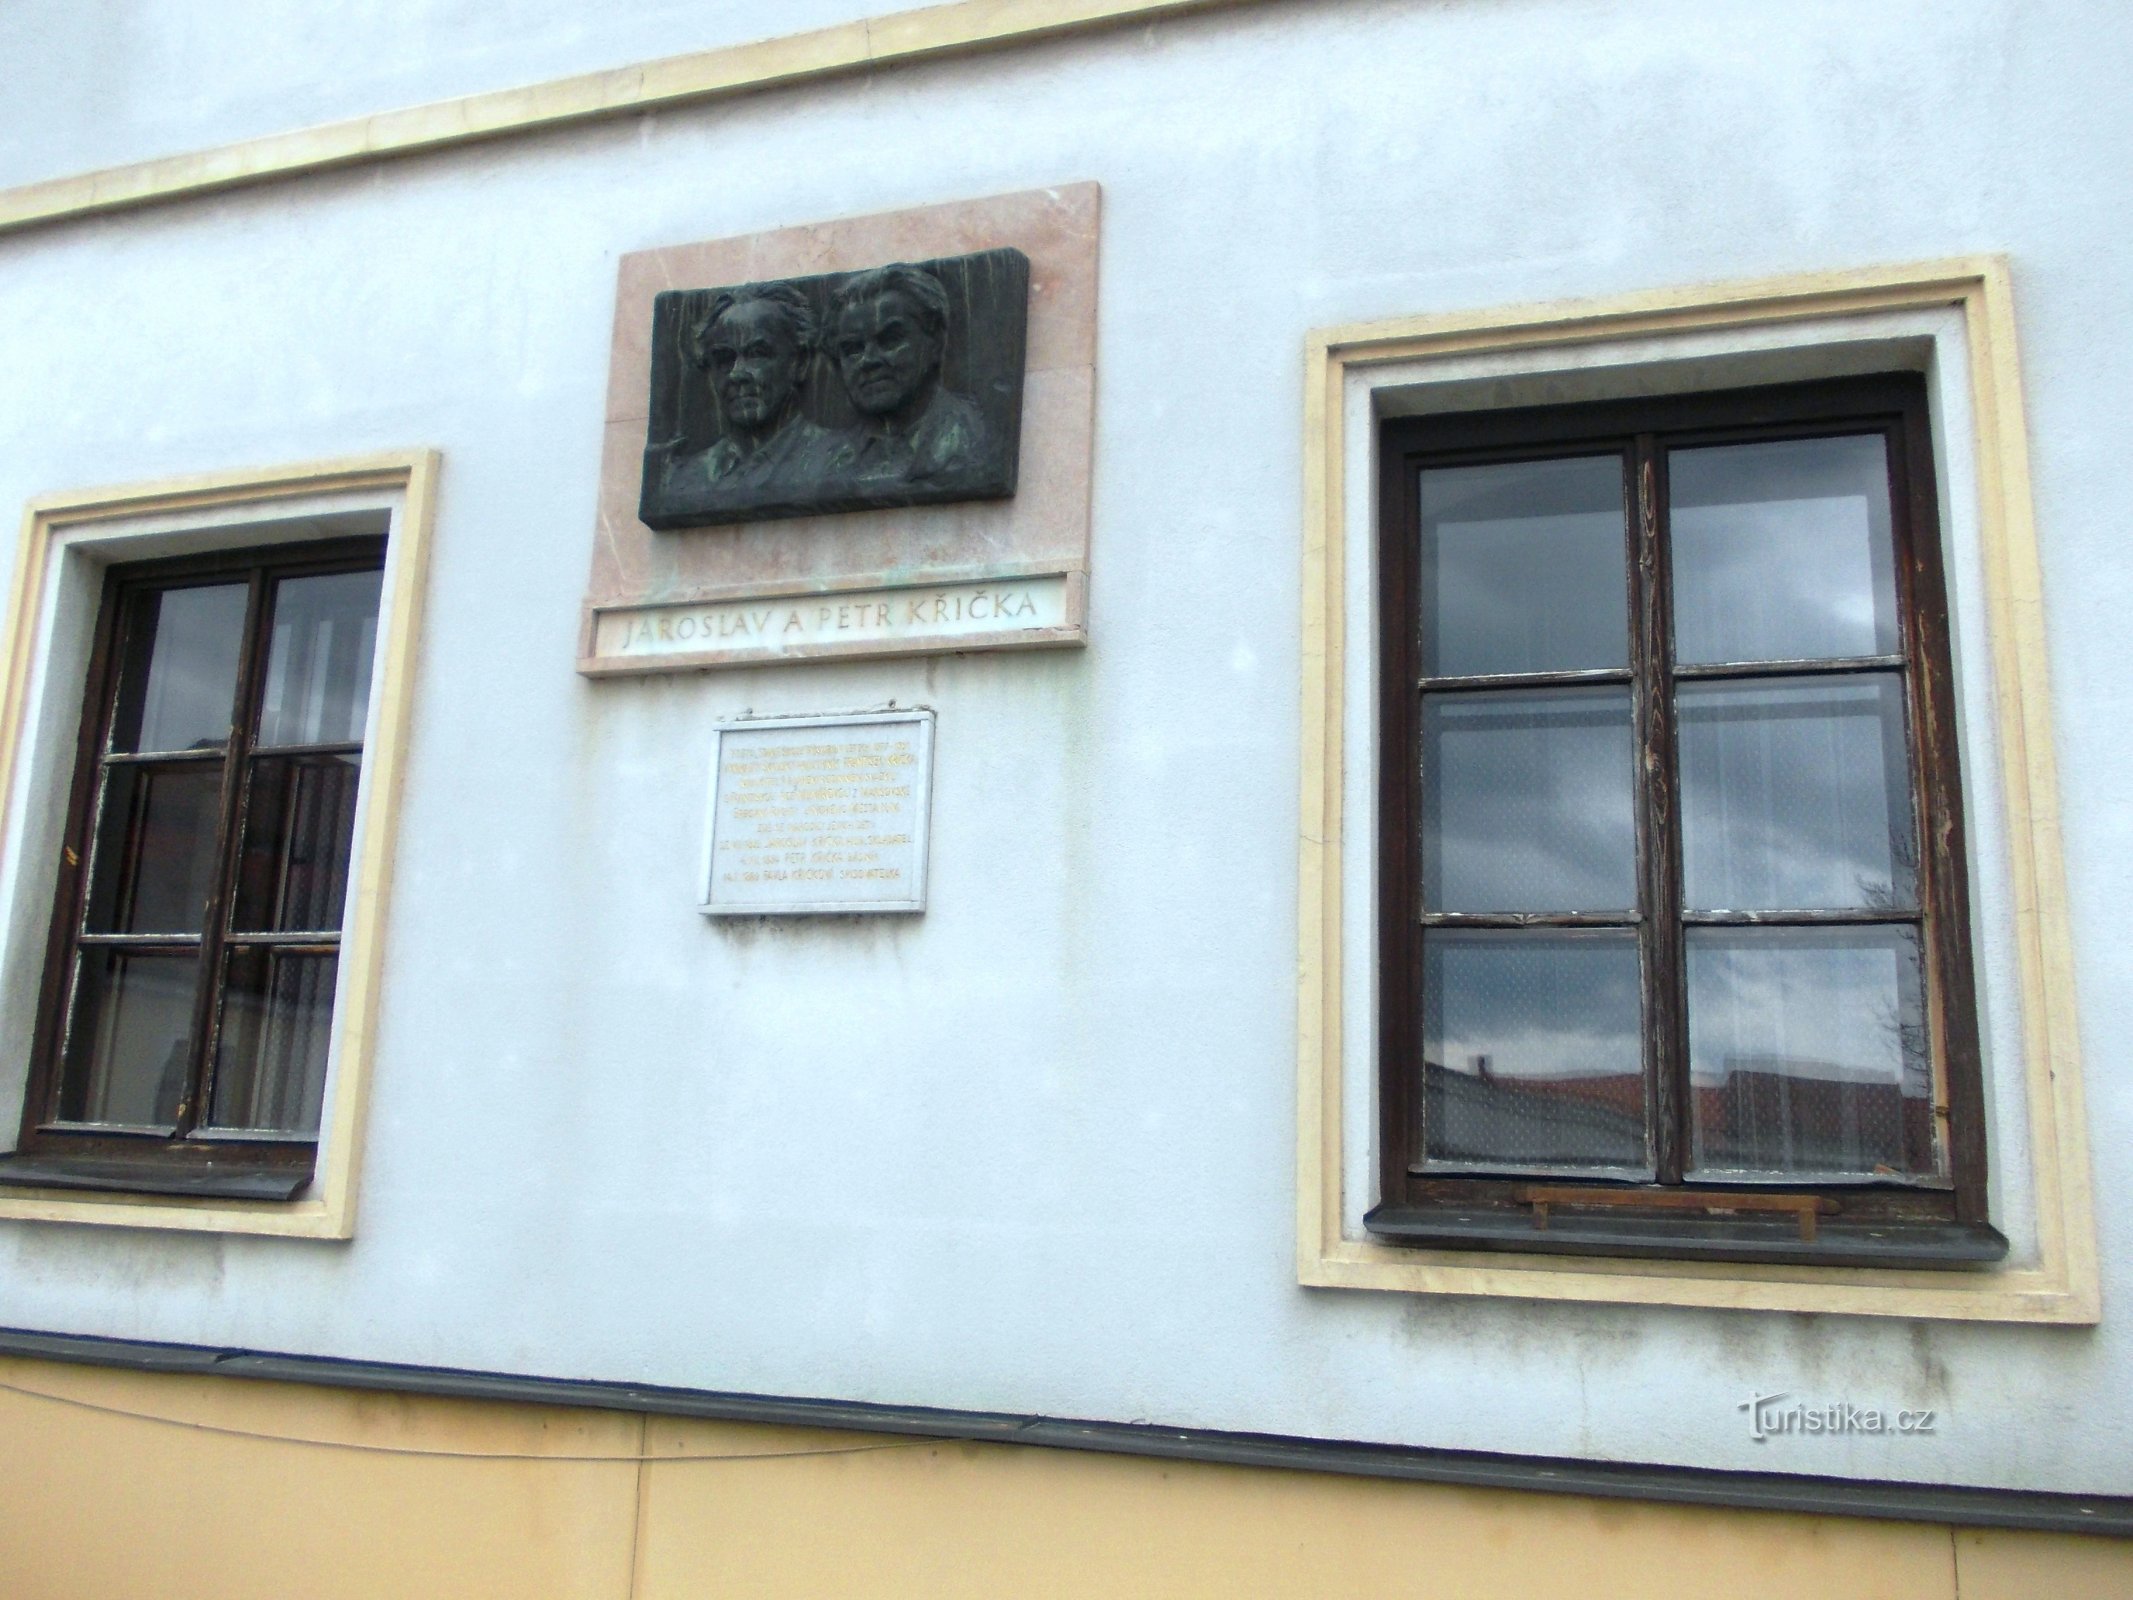 deux plaques commémoratives sur l'ancien bâtiment de l'école